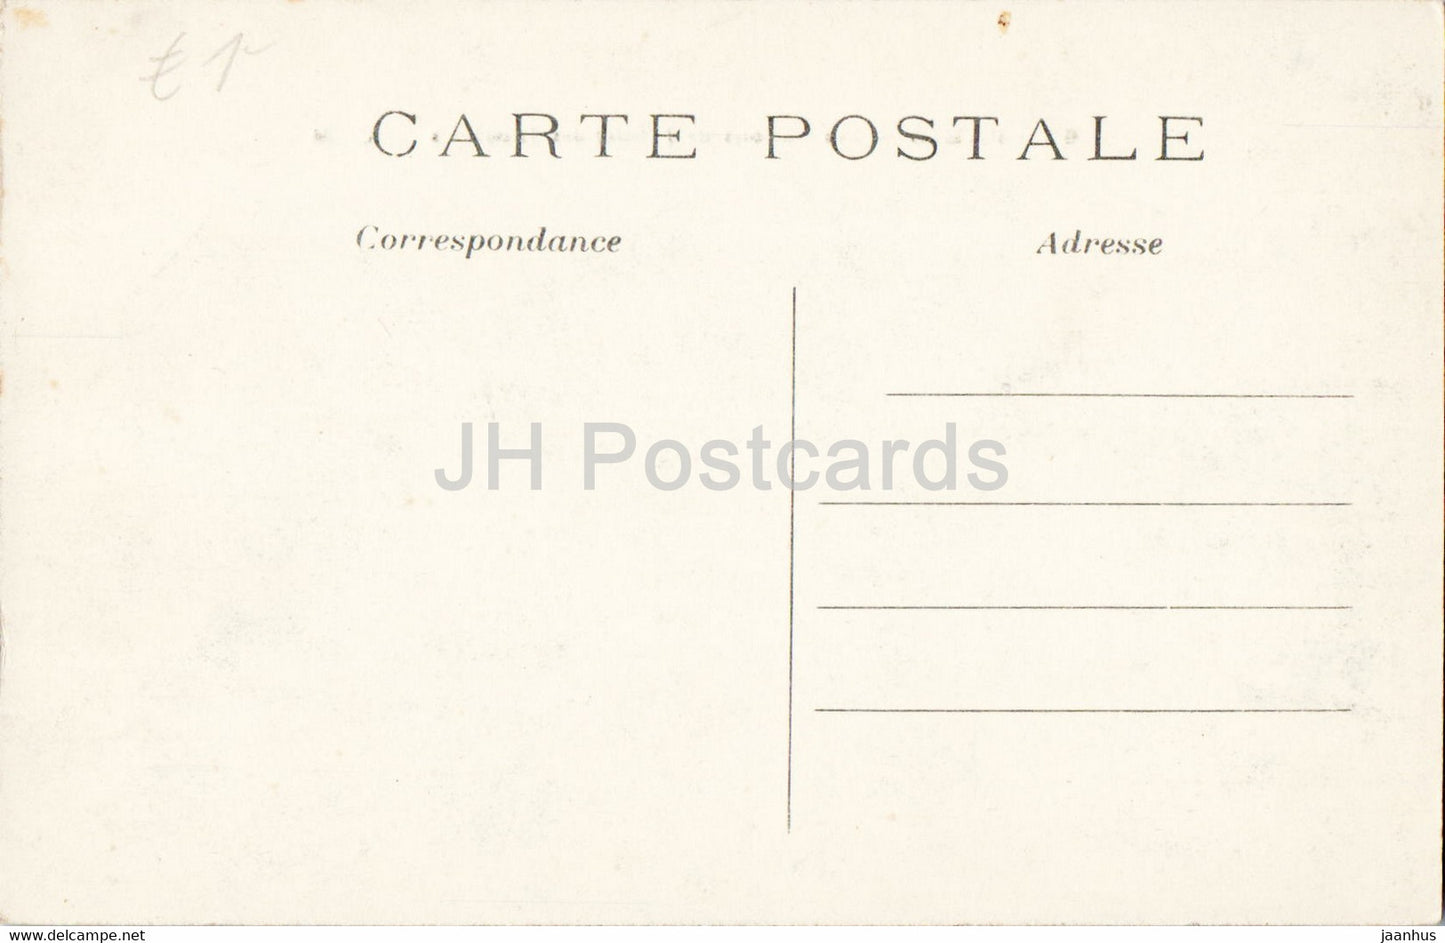 Paris - Les Canons de l'Hotel des Invalides - cannon - military - 263 - old postcard - France - unused